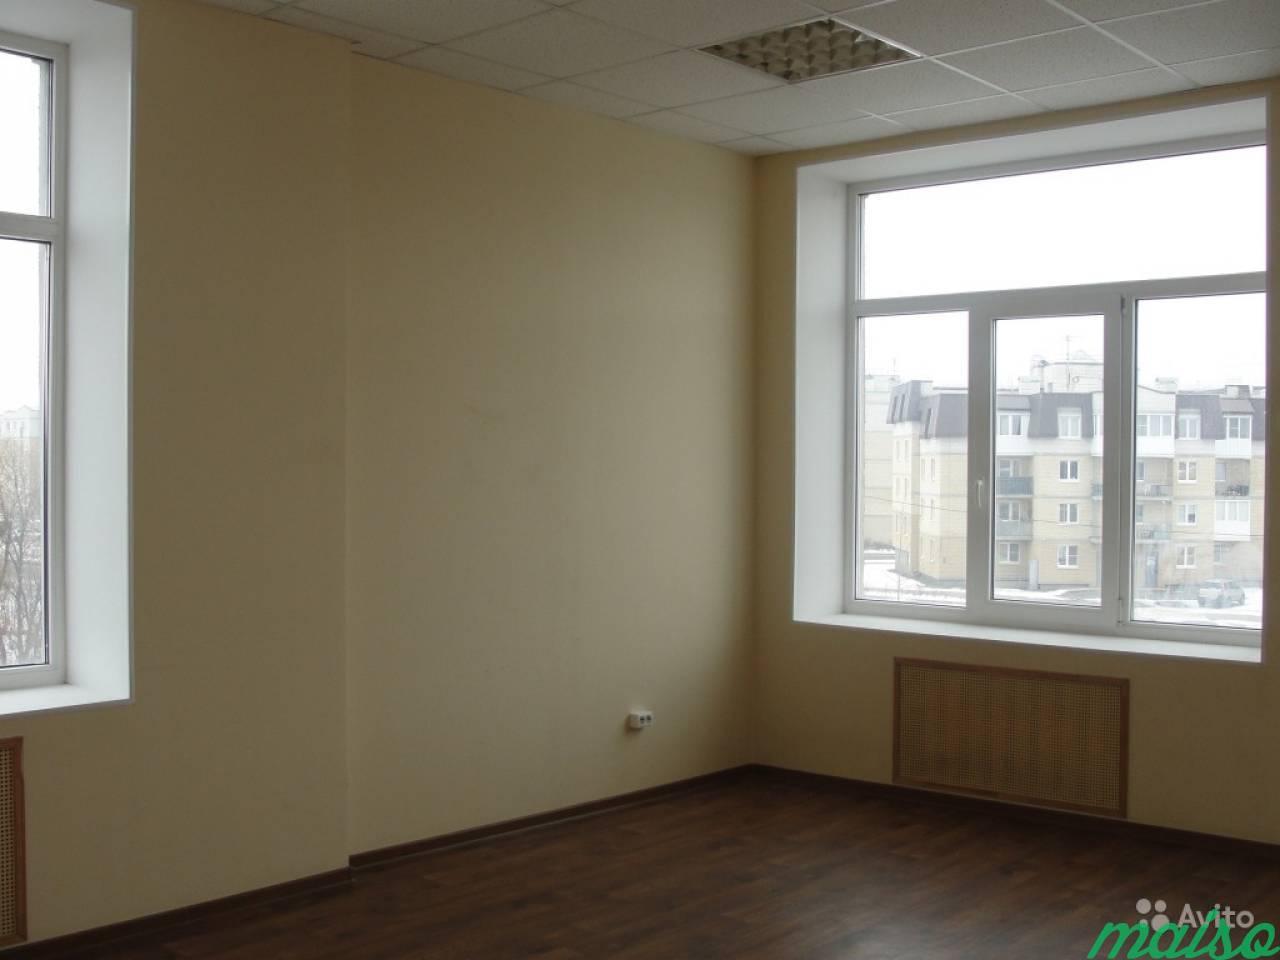 Офисное помещение в Славянке, от 12 м² до 500 м² в Санкт-Петербурге. Фото 2